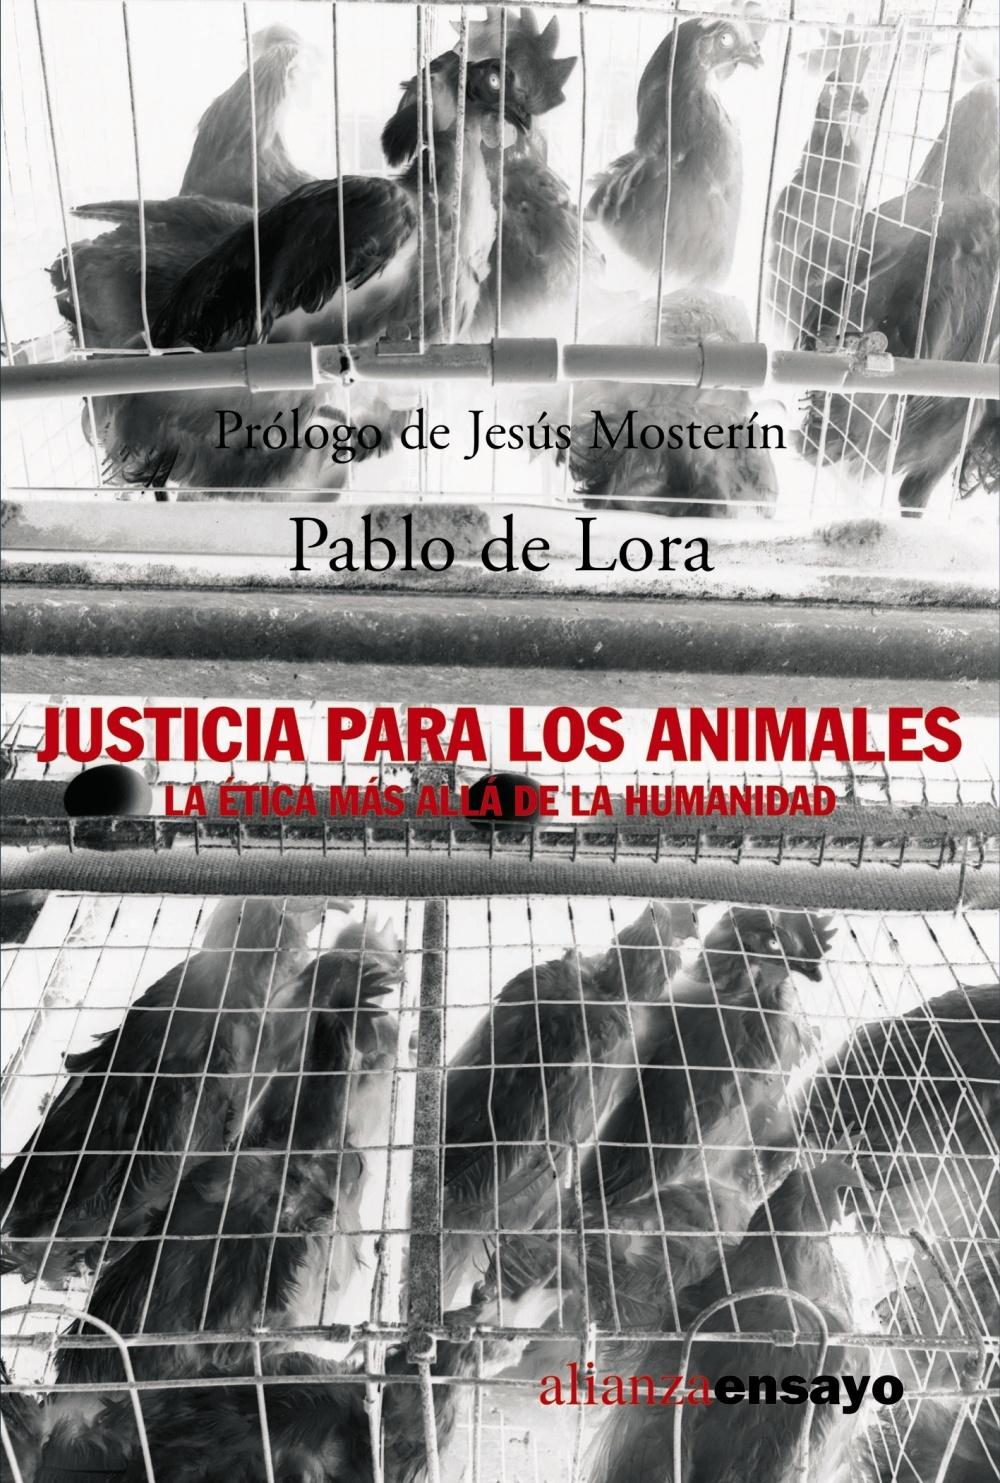 JUSTICIA PARA LOS ANIMALES "La ética más allá de la humanidad"